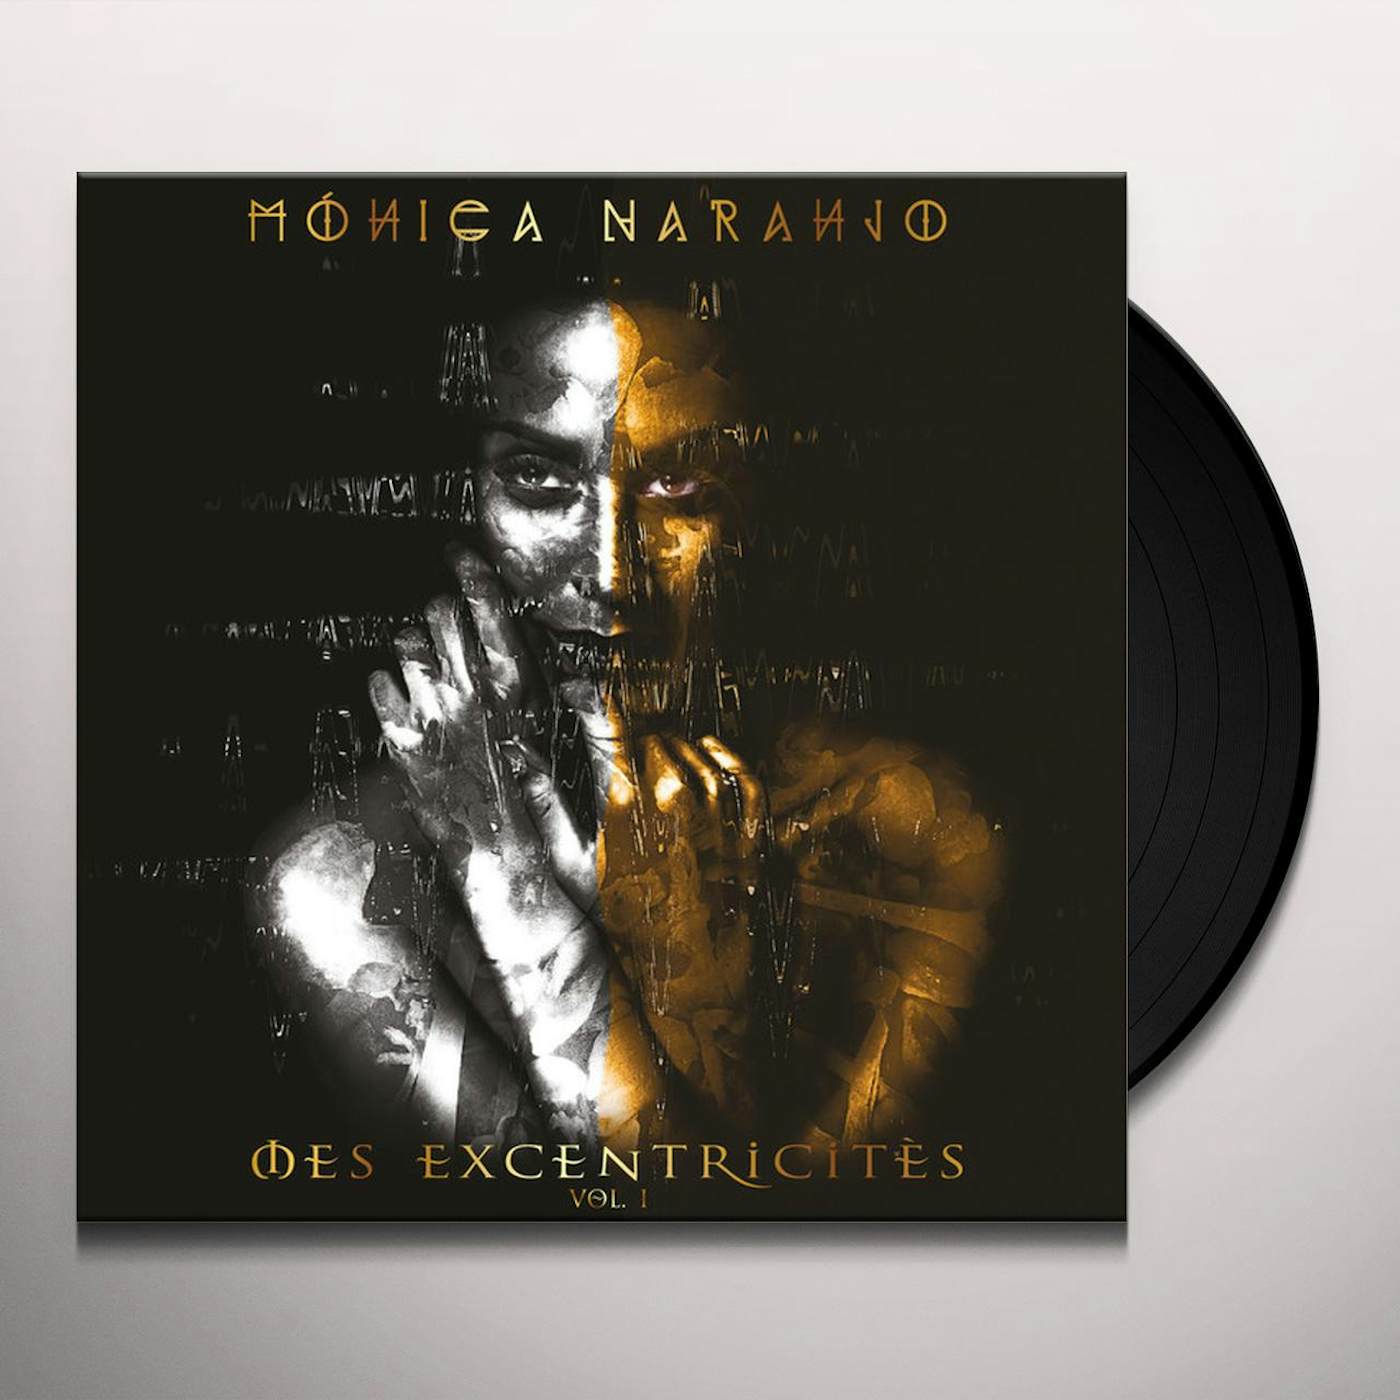 Lubna Vinyl Record - Monica Naranjo